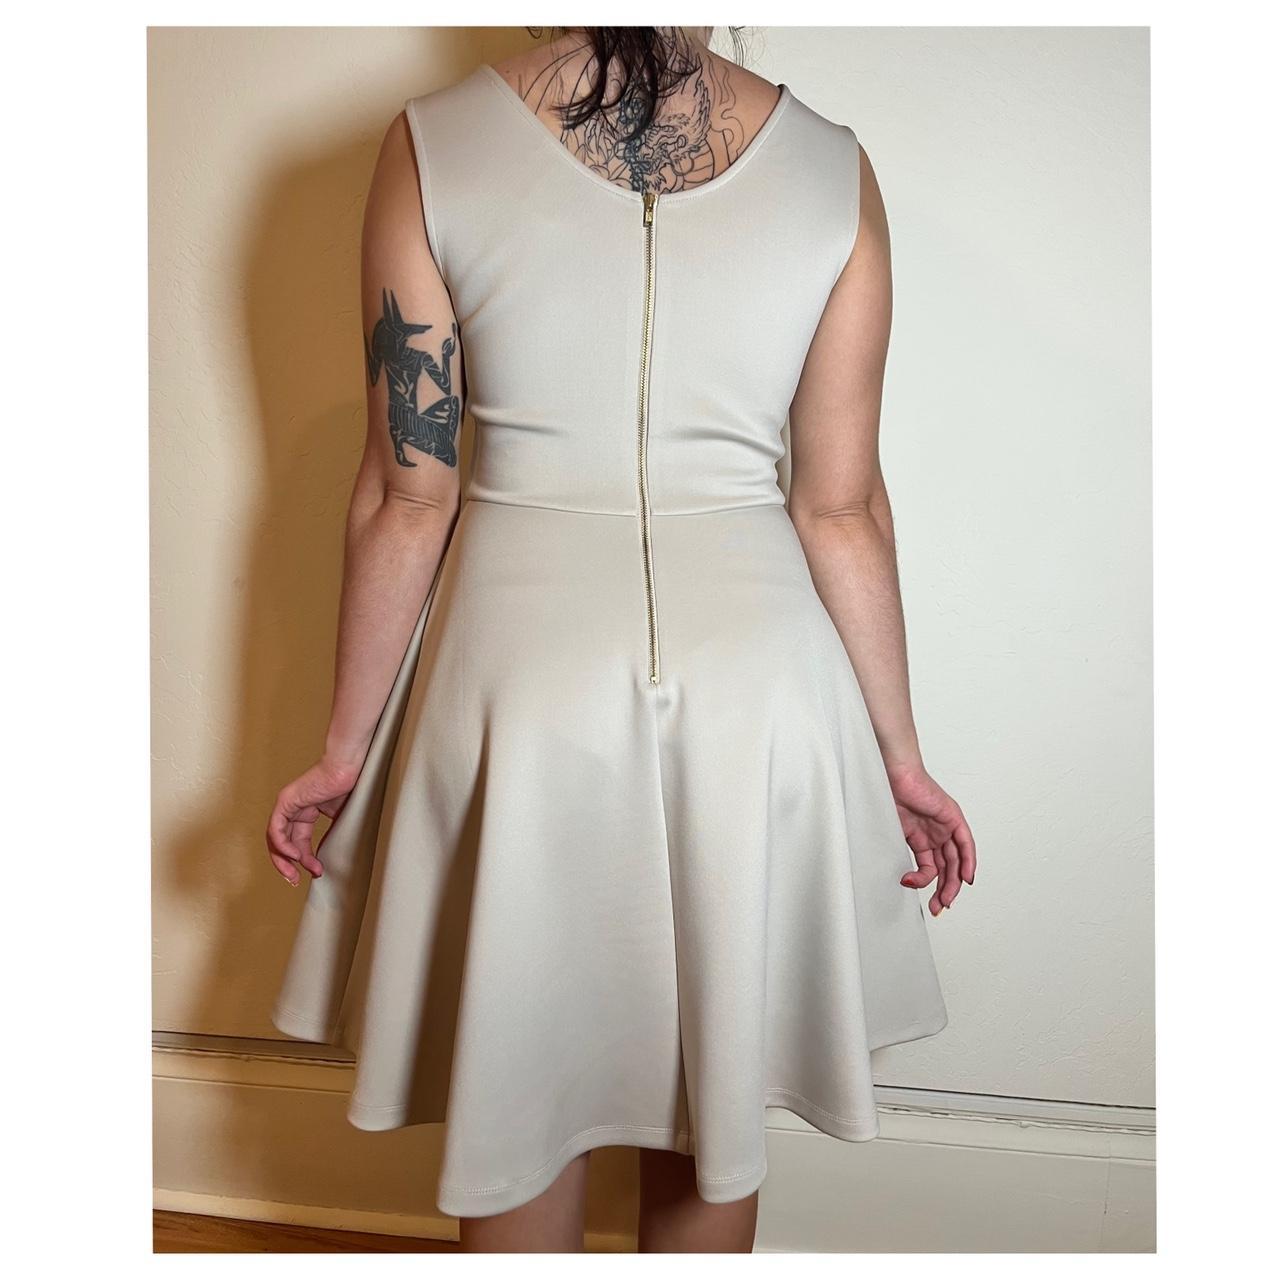 Product Image 2 - Elegant Flowy Dress
Size 2 (i